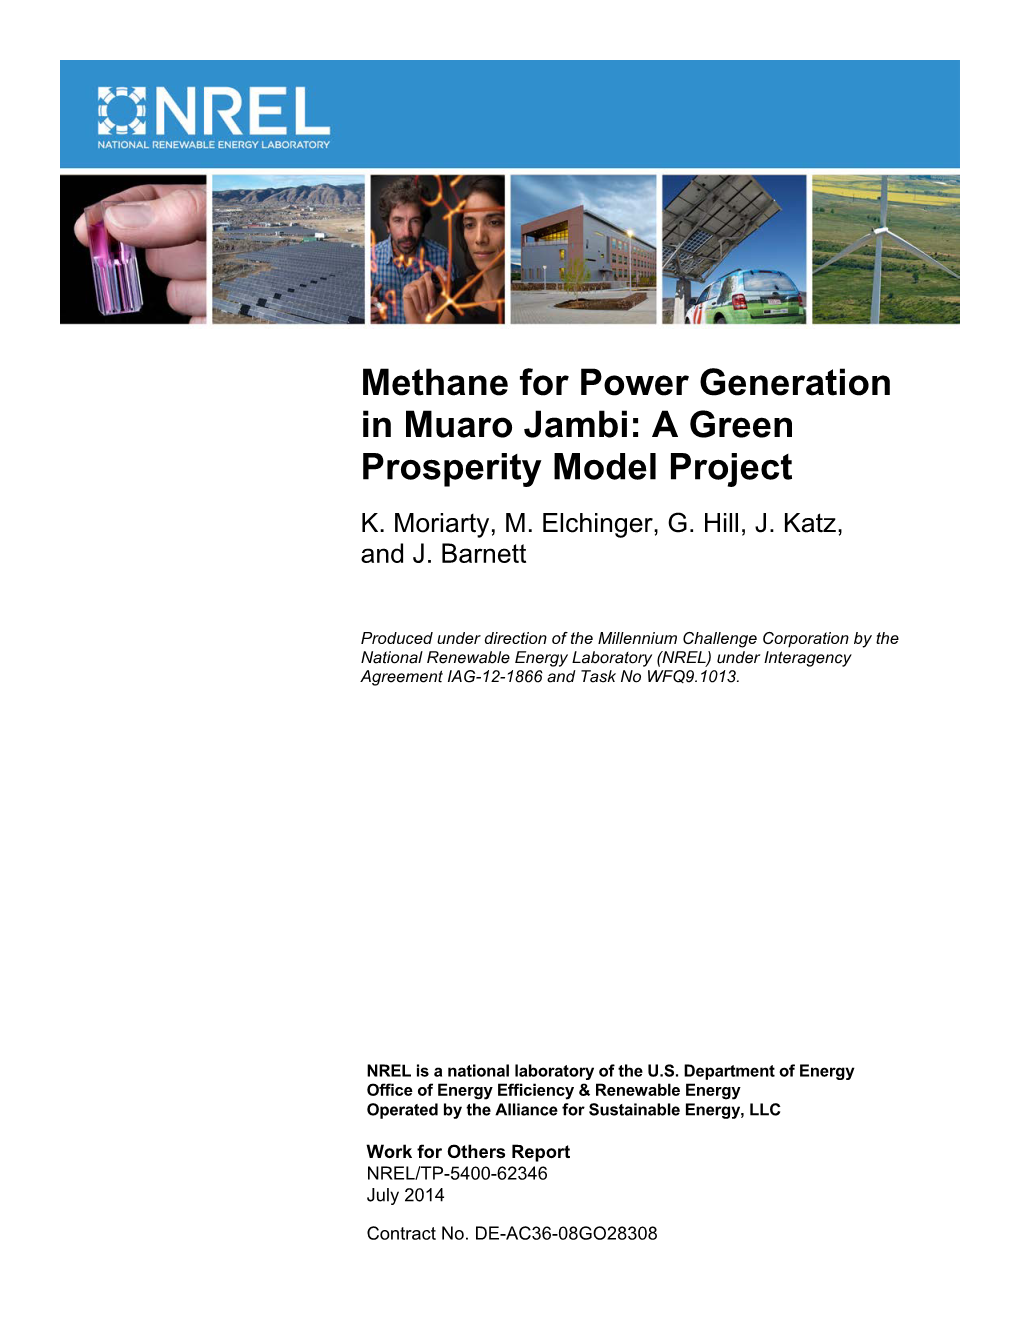 Methane for Power Generation in Muaro Jambi: a Green Prosperity Model Project K